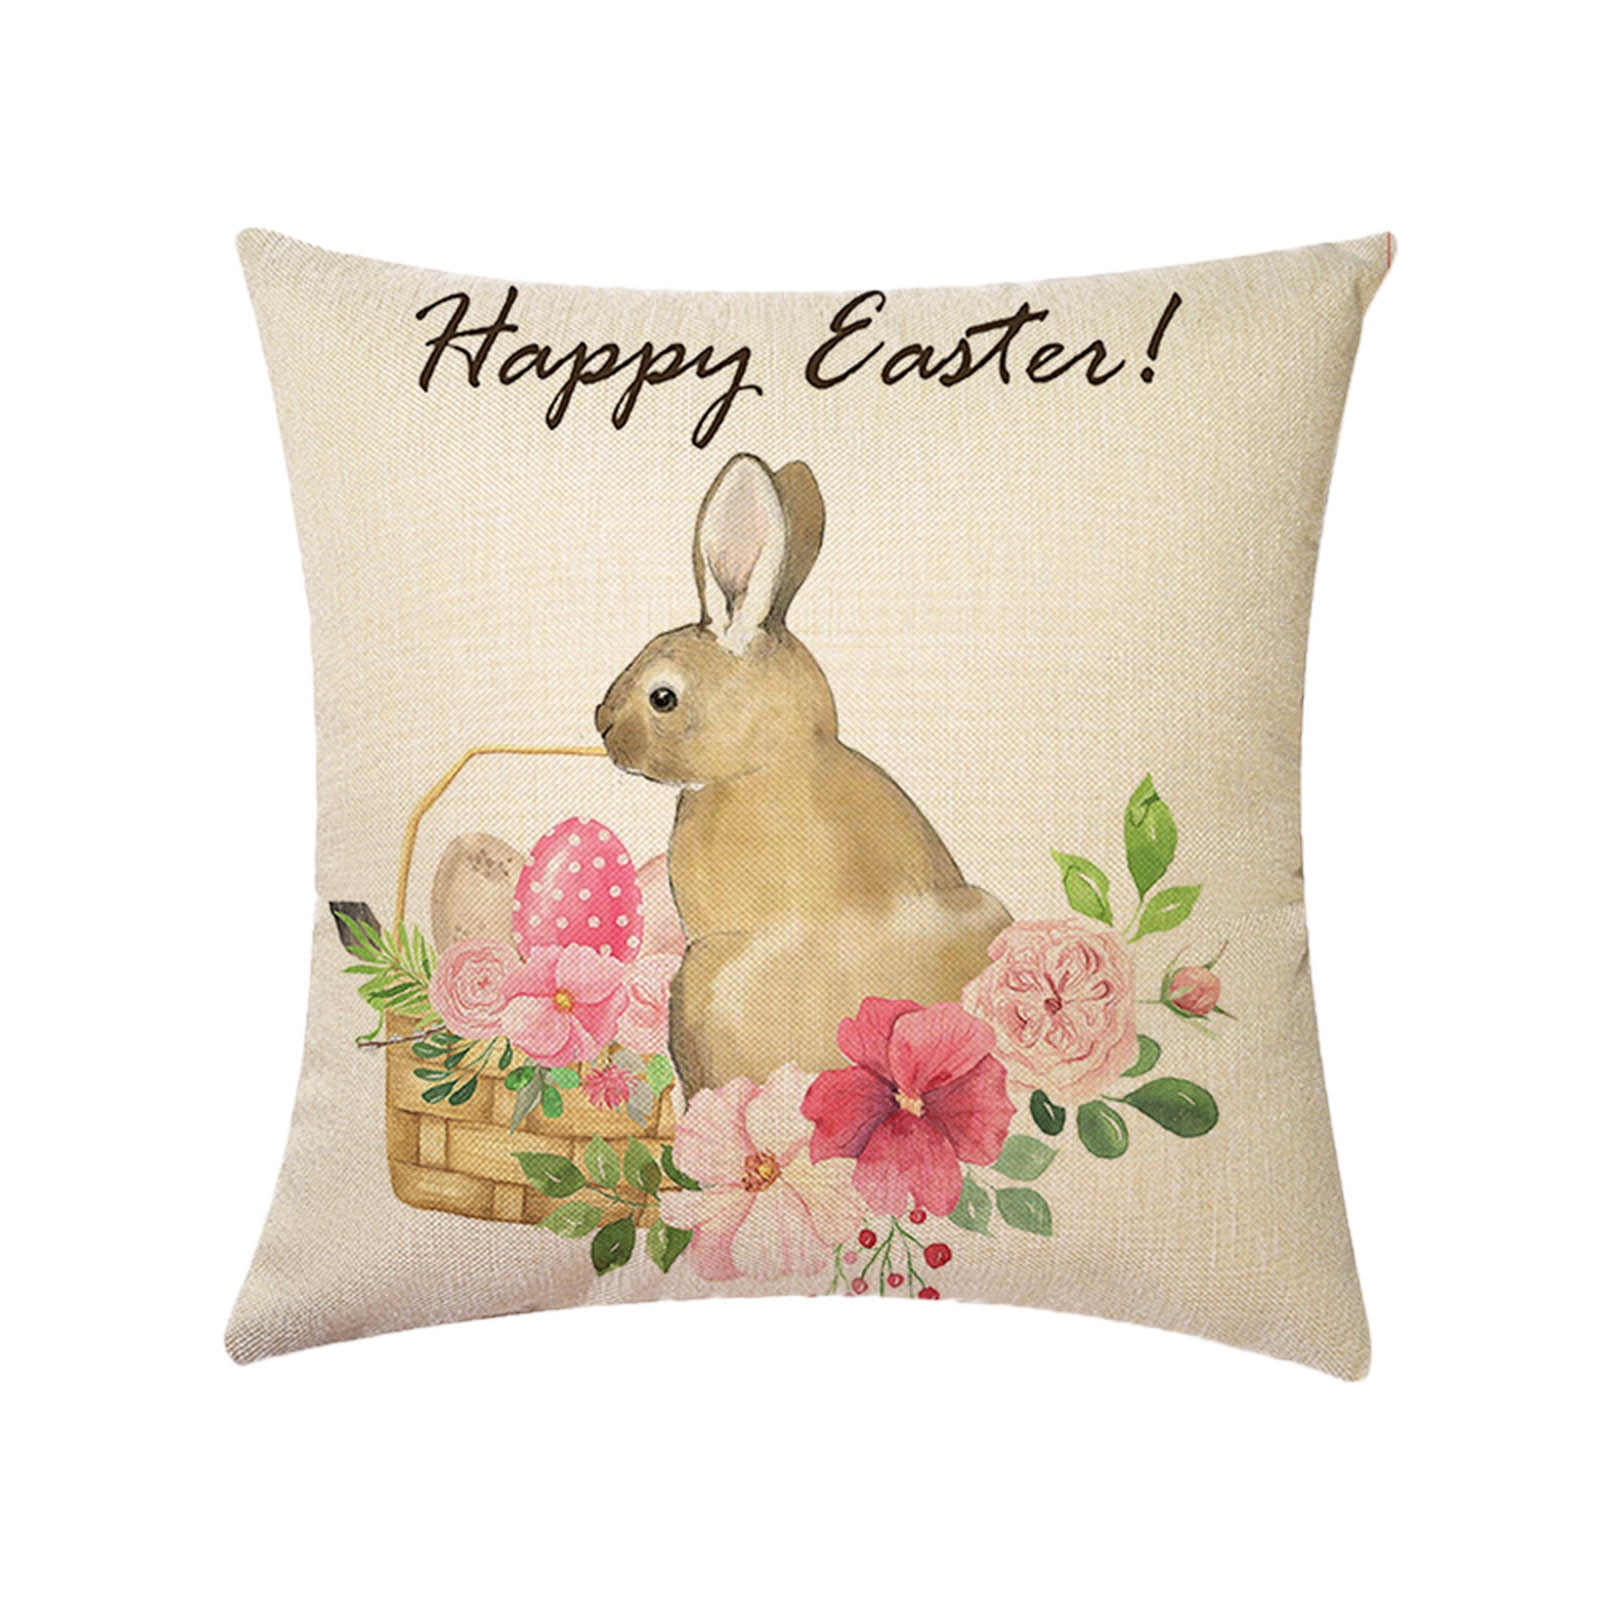 Cute Cartoon Spring Easter Rabbit Pillow Case Cotton Linen Cushion Cover Decor